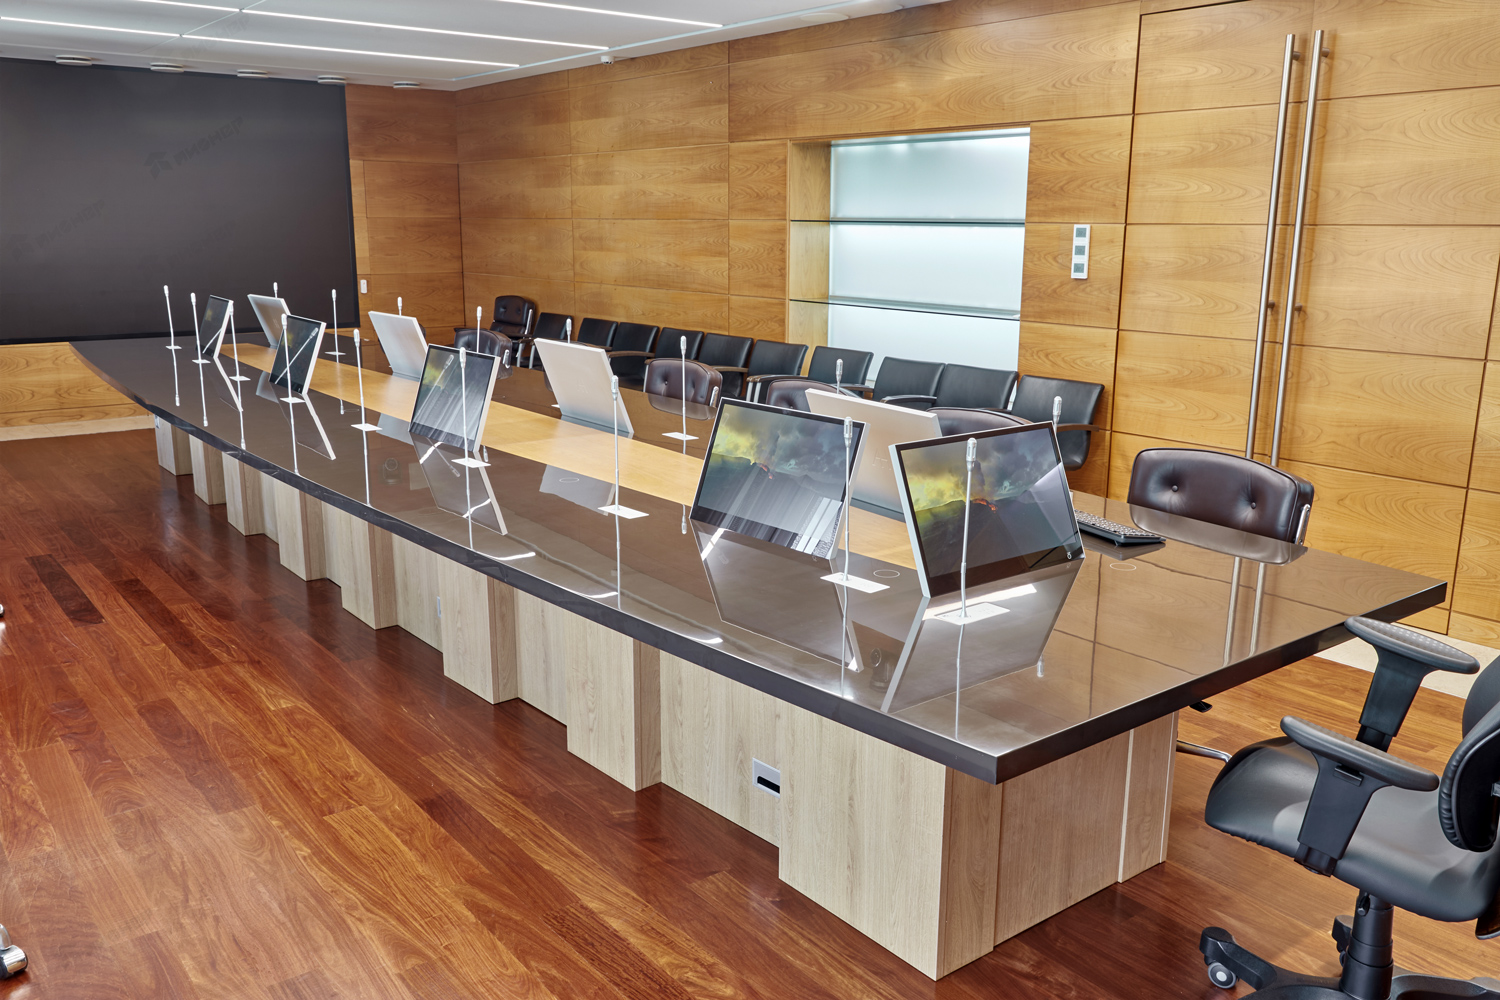 Стол в зал совещаний для собрания акционеров, руководителей и топ менеджеров